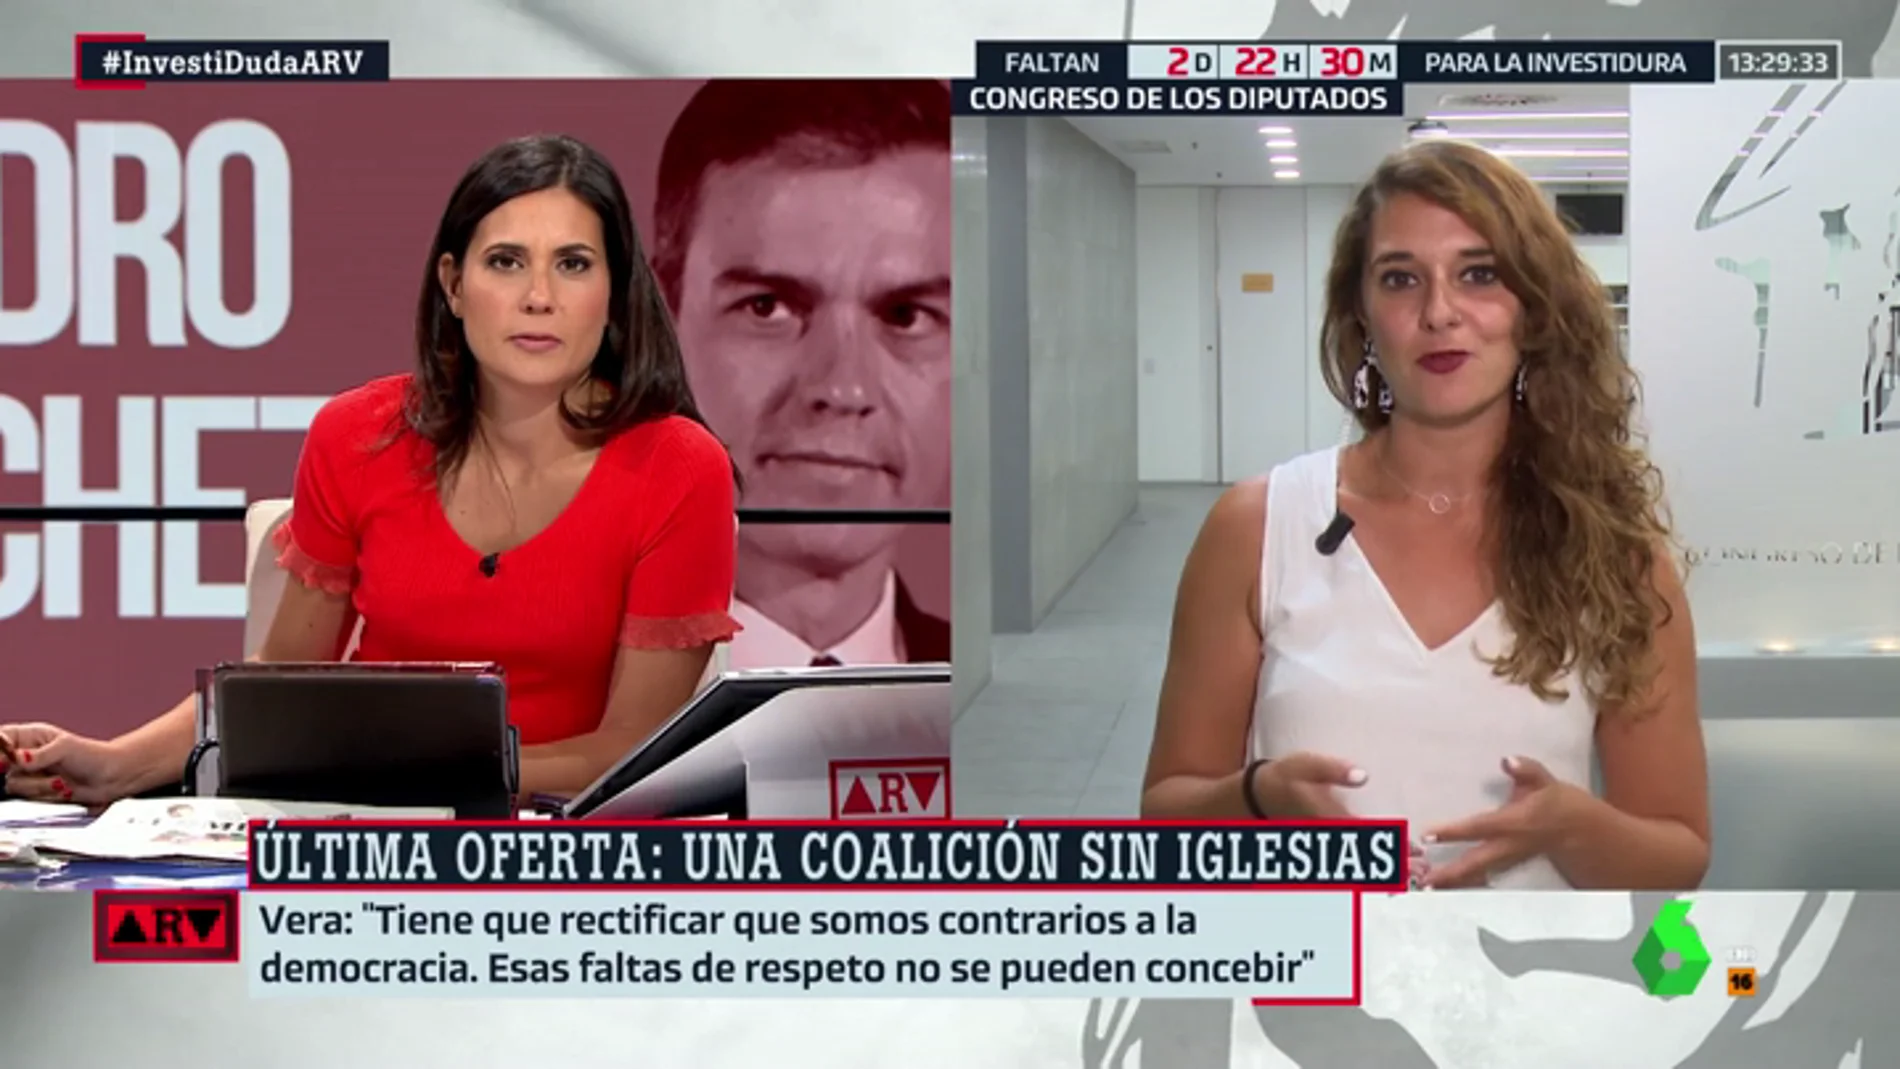 Noelia Vera (Podemos): "Tienen un problema personal con Pablo Iglesias, pero nuestras posiciones políticas son compartidas"